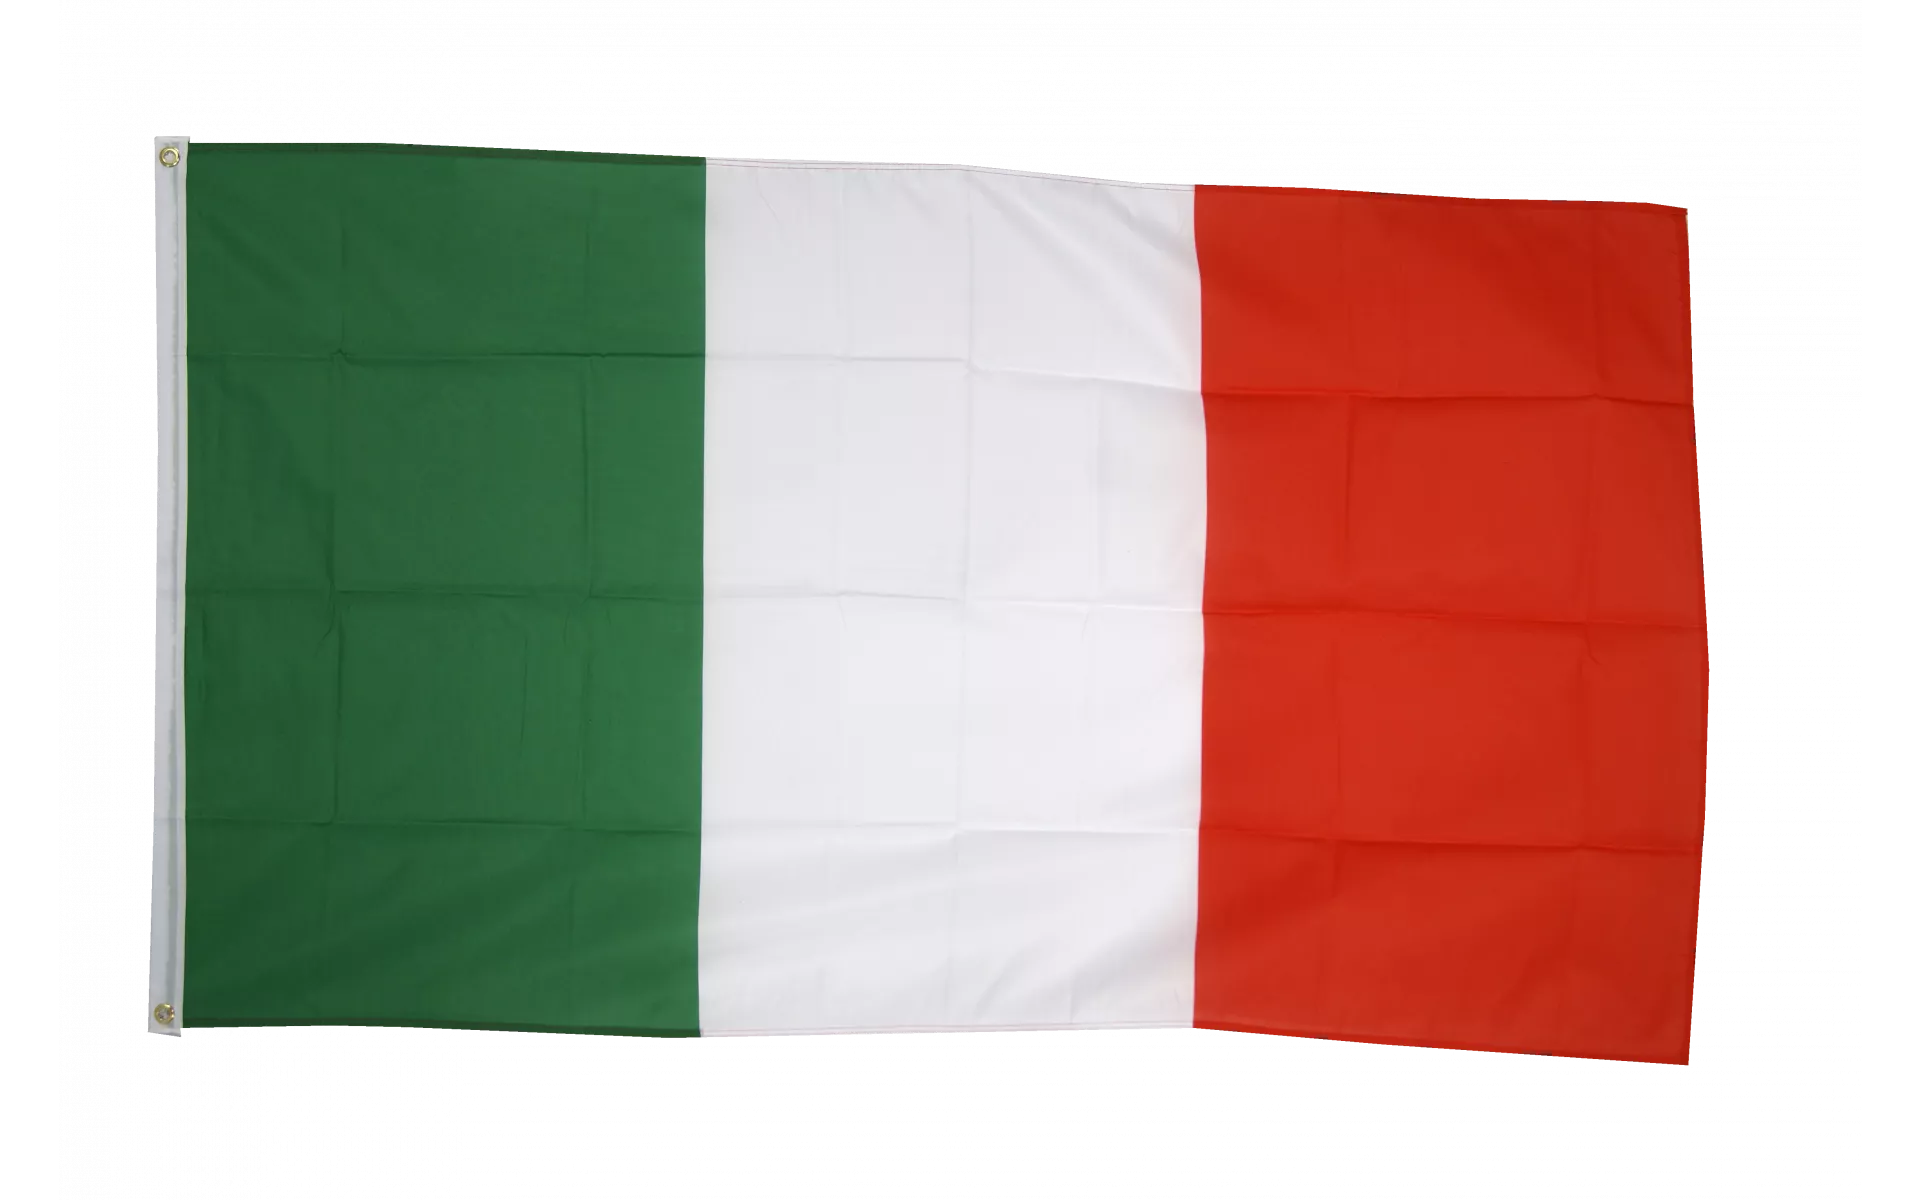 Italien Flaggen & Italien Fahnen ab 1,90 € günstig online kaufen